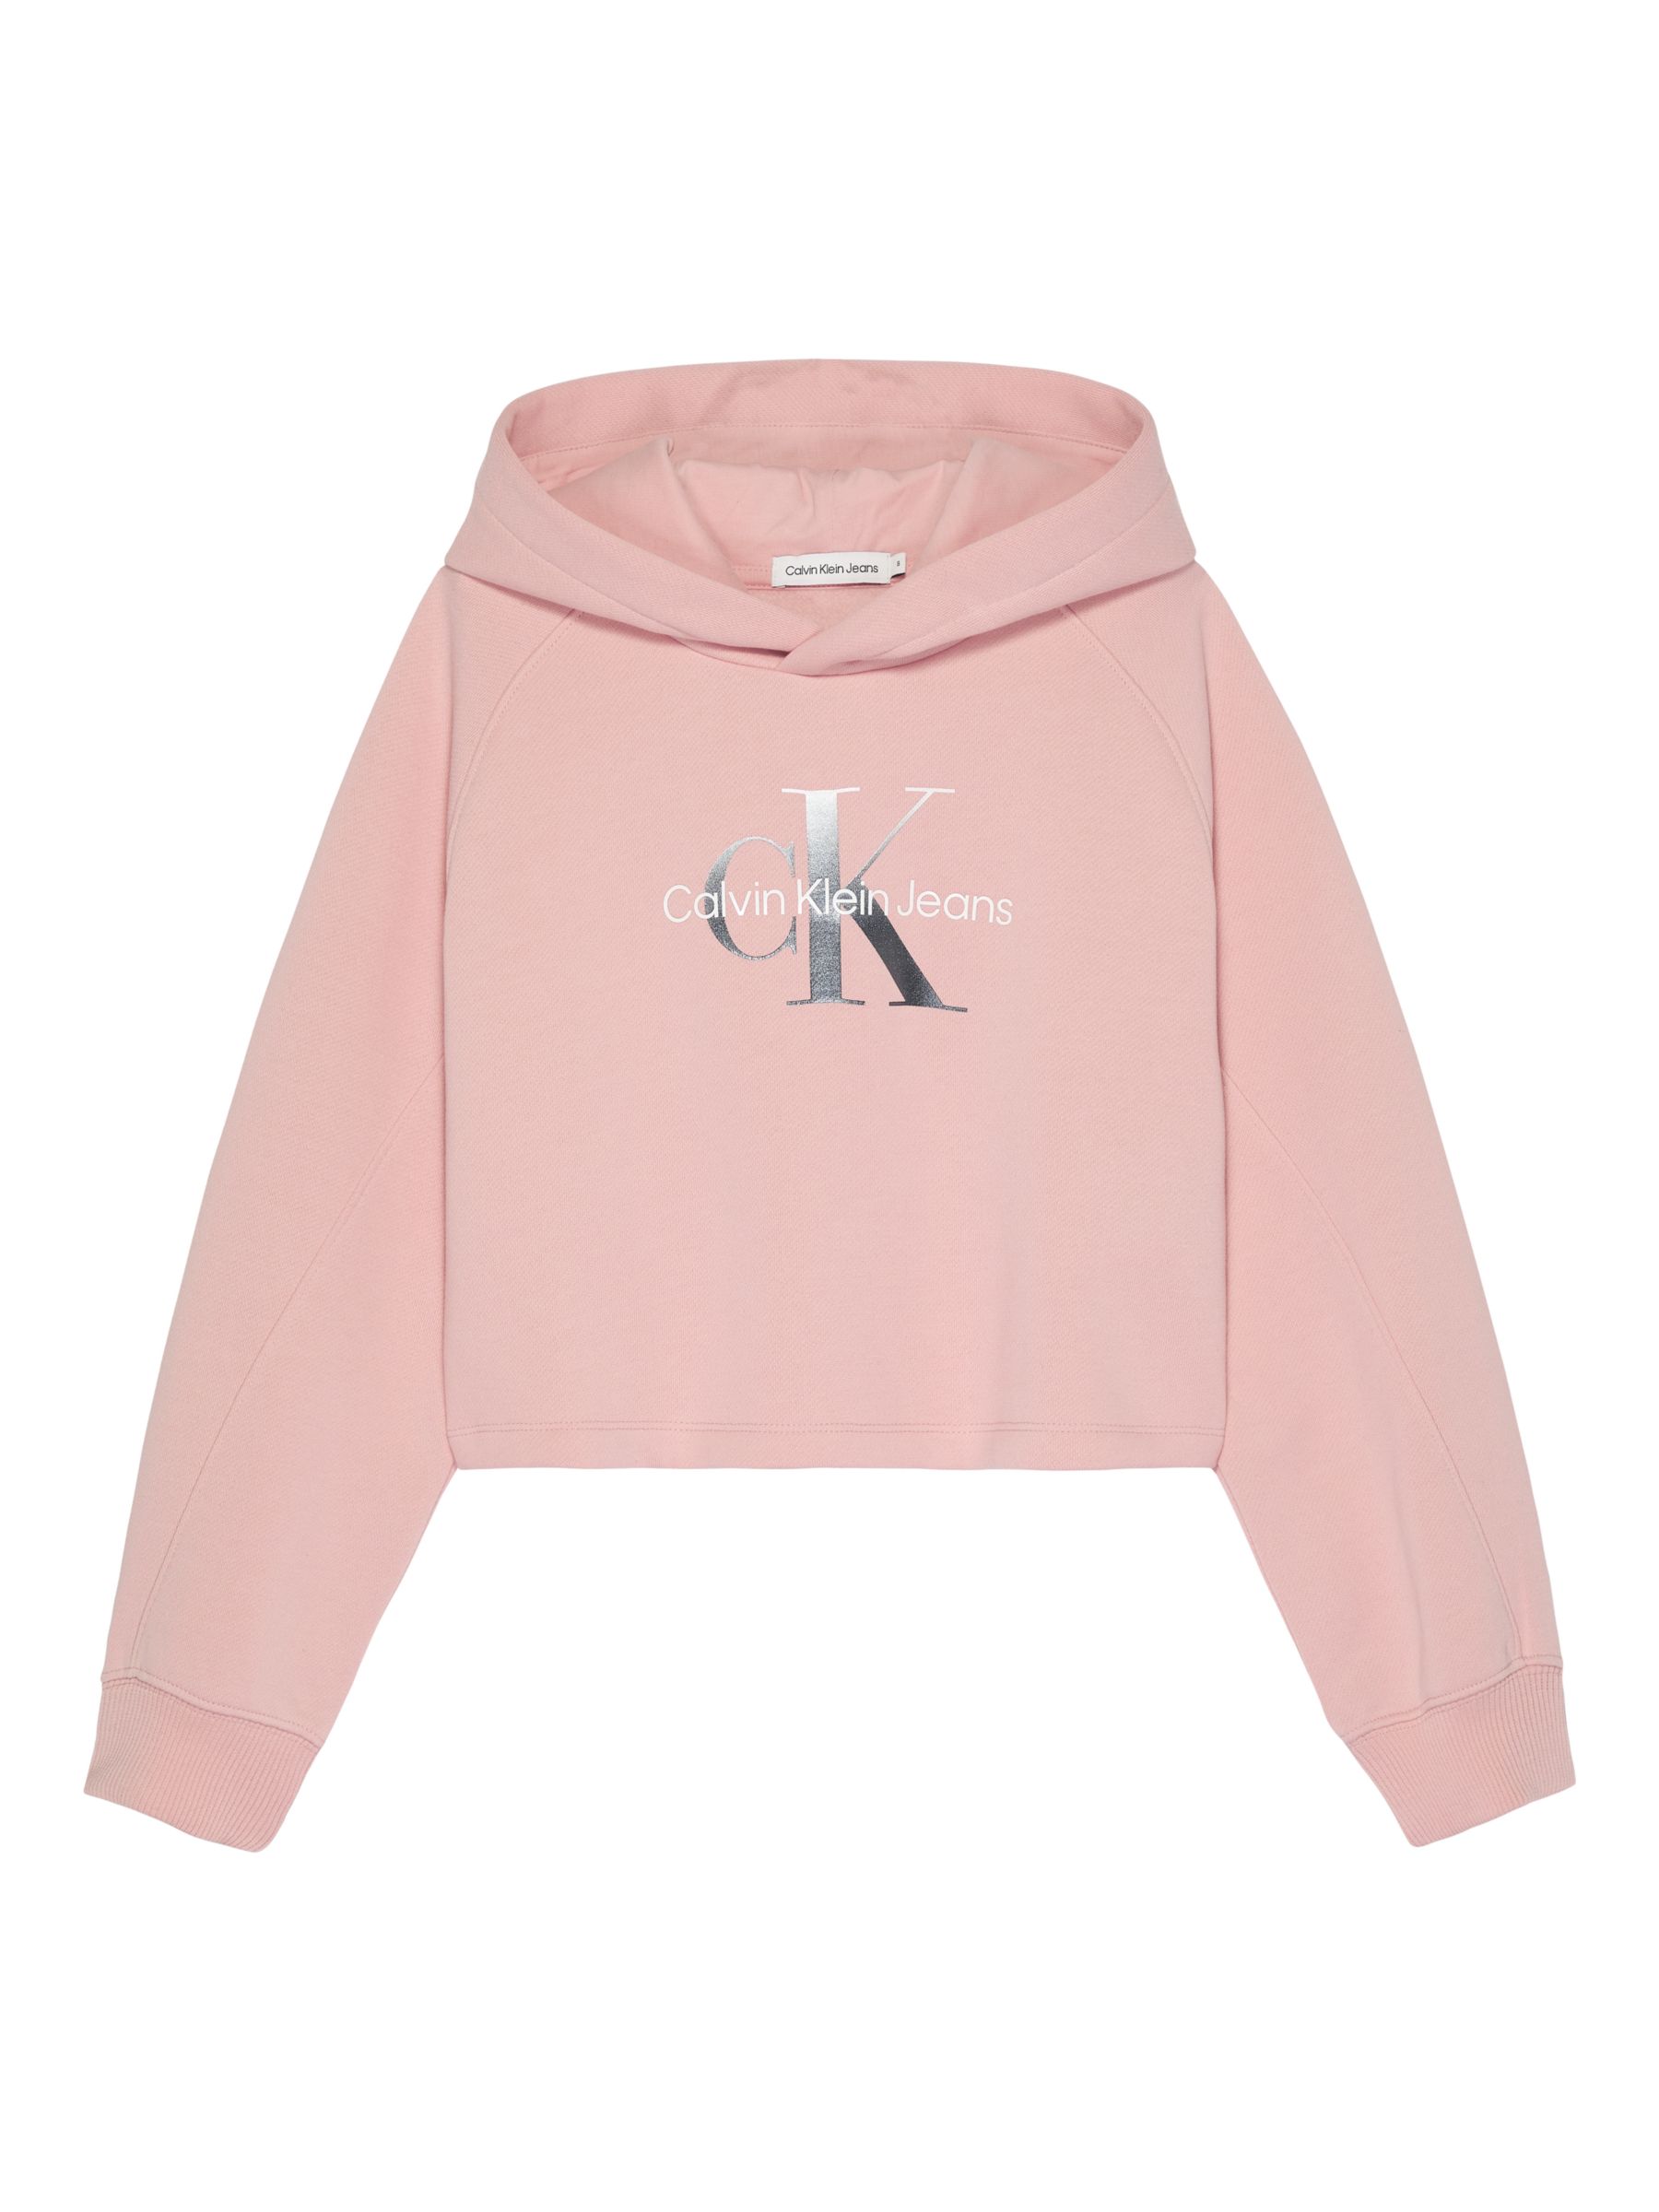 Afleiden Wardianzaak wiel Calvin Klein Kids' Signature CK Monogram Logo Hoodie, Pink Blush